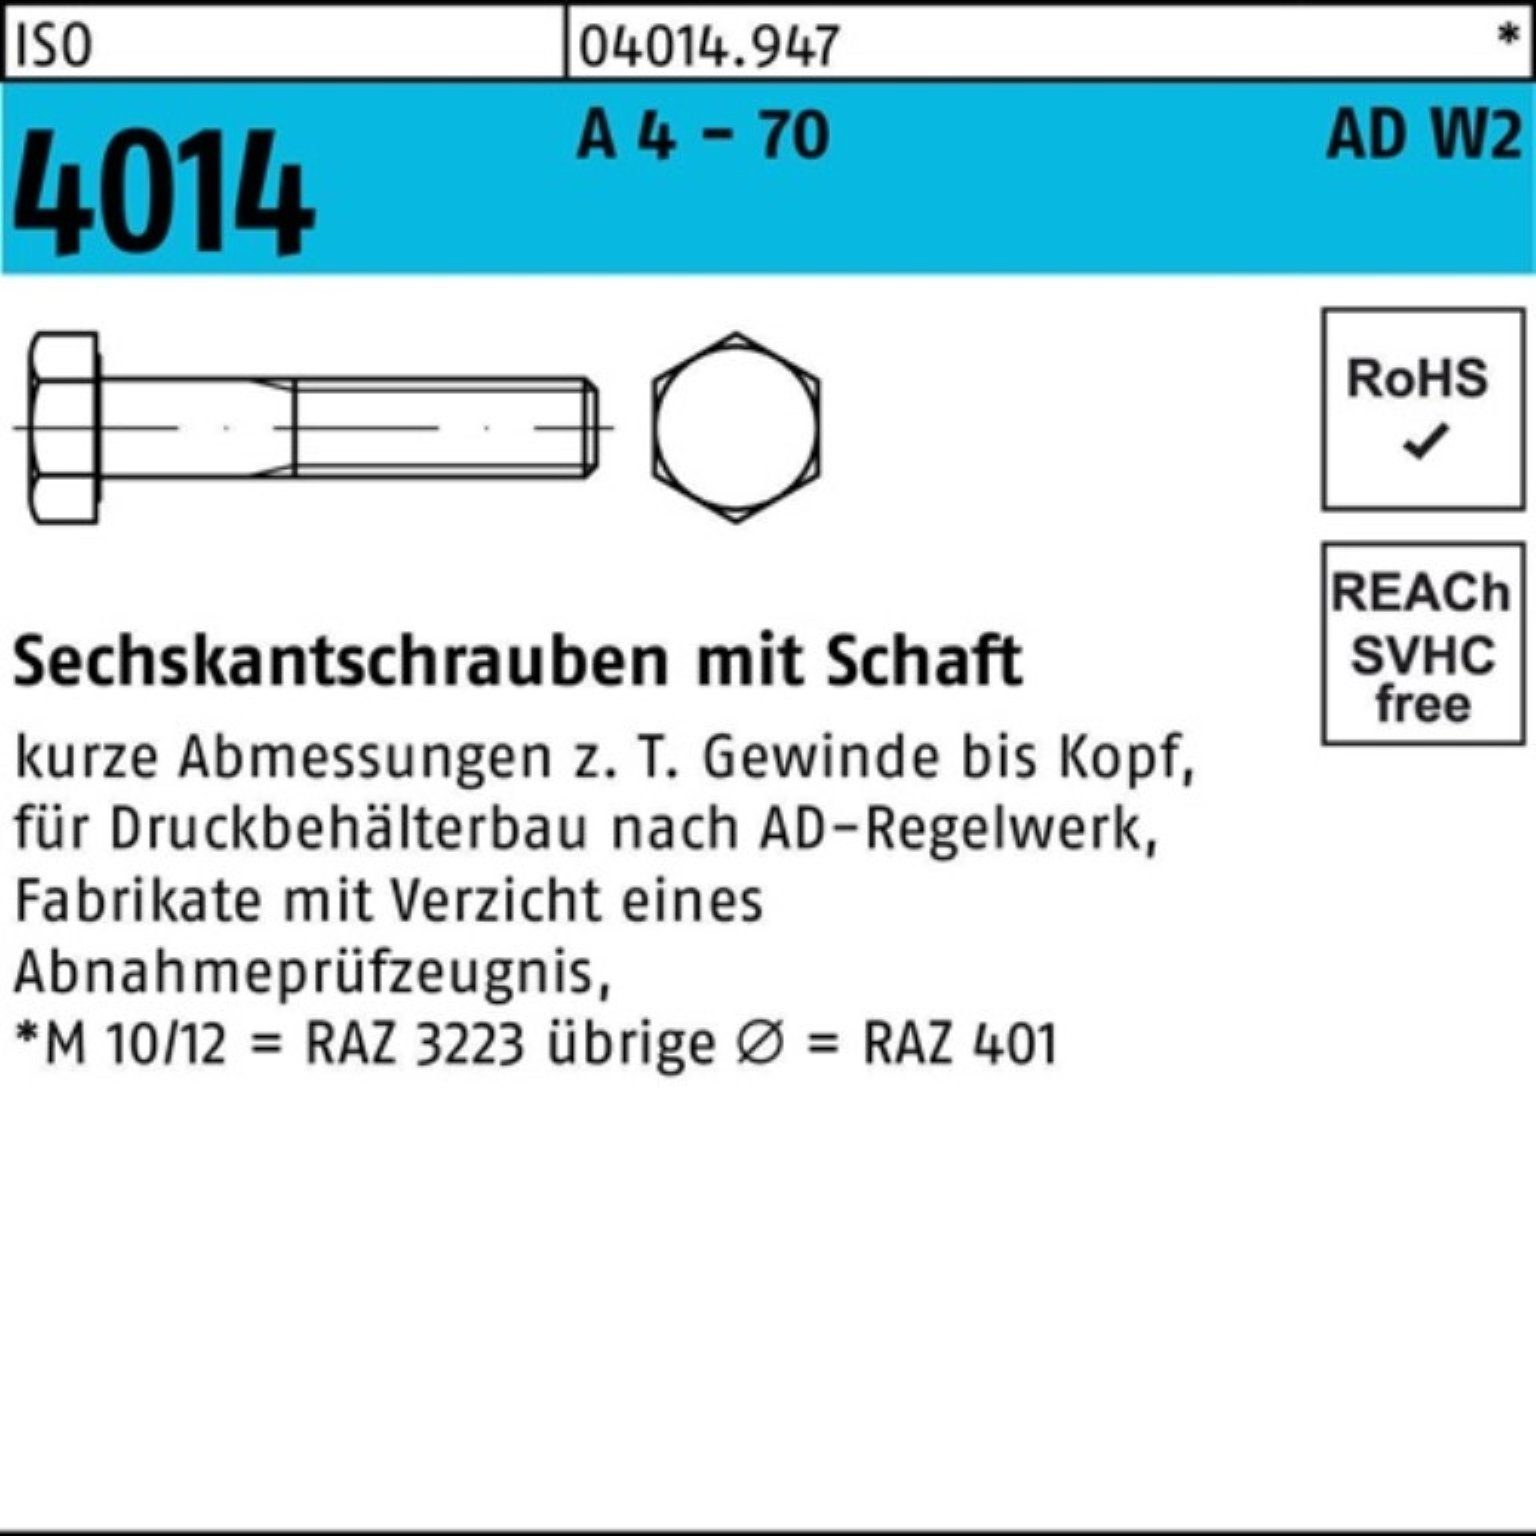 Bufab Sechskantschraube 100er Pack Sechskantschraube ISO 4014 Schaft M20x 190 A 4 - 70 AD-W2 1